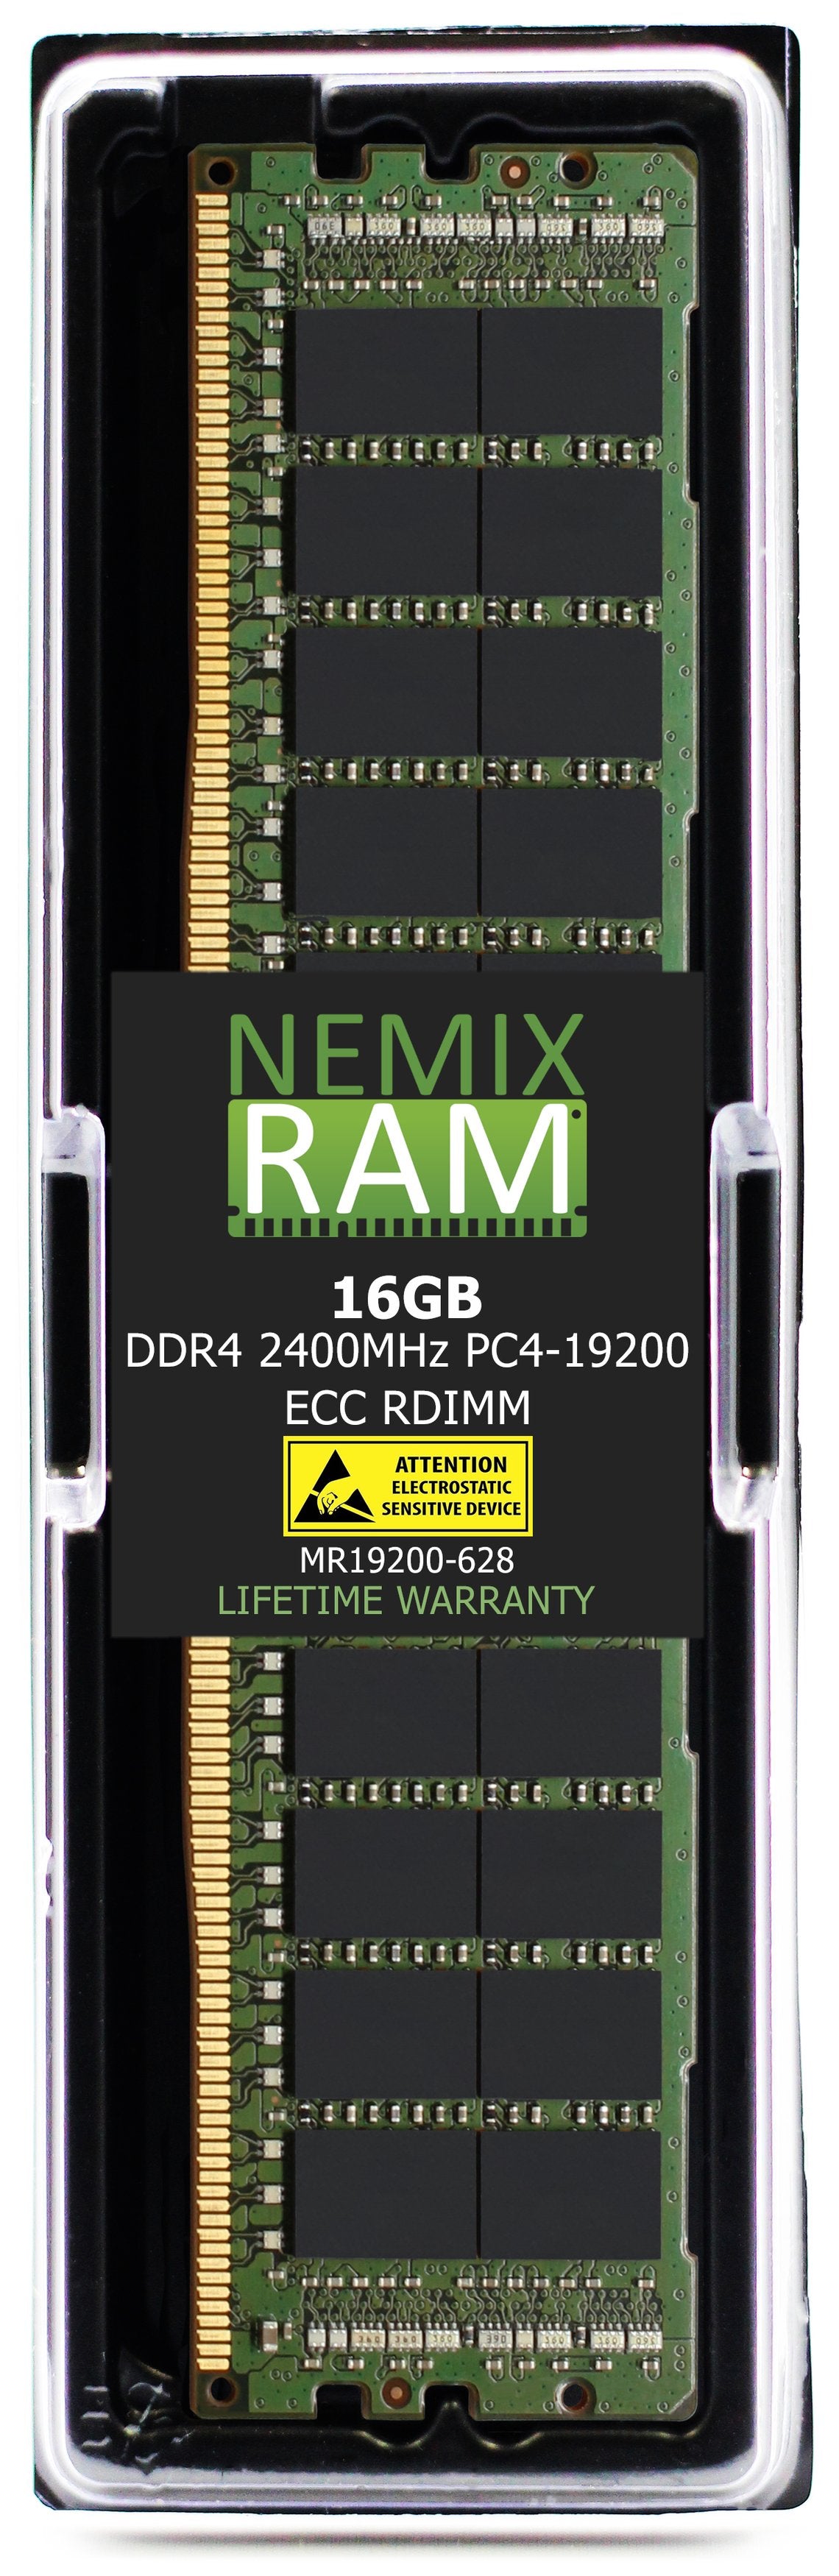 Hynix HMA82GR7MFR8N-UH 16GB DDR4 2400MHZ PC4-19200 RDIMM Compatible Memory Module